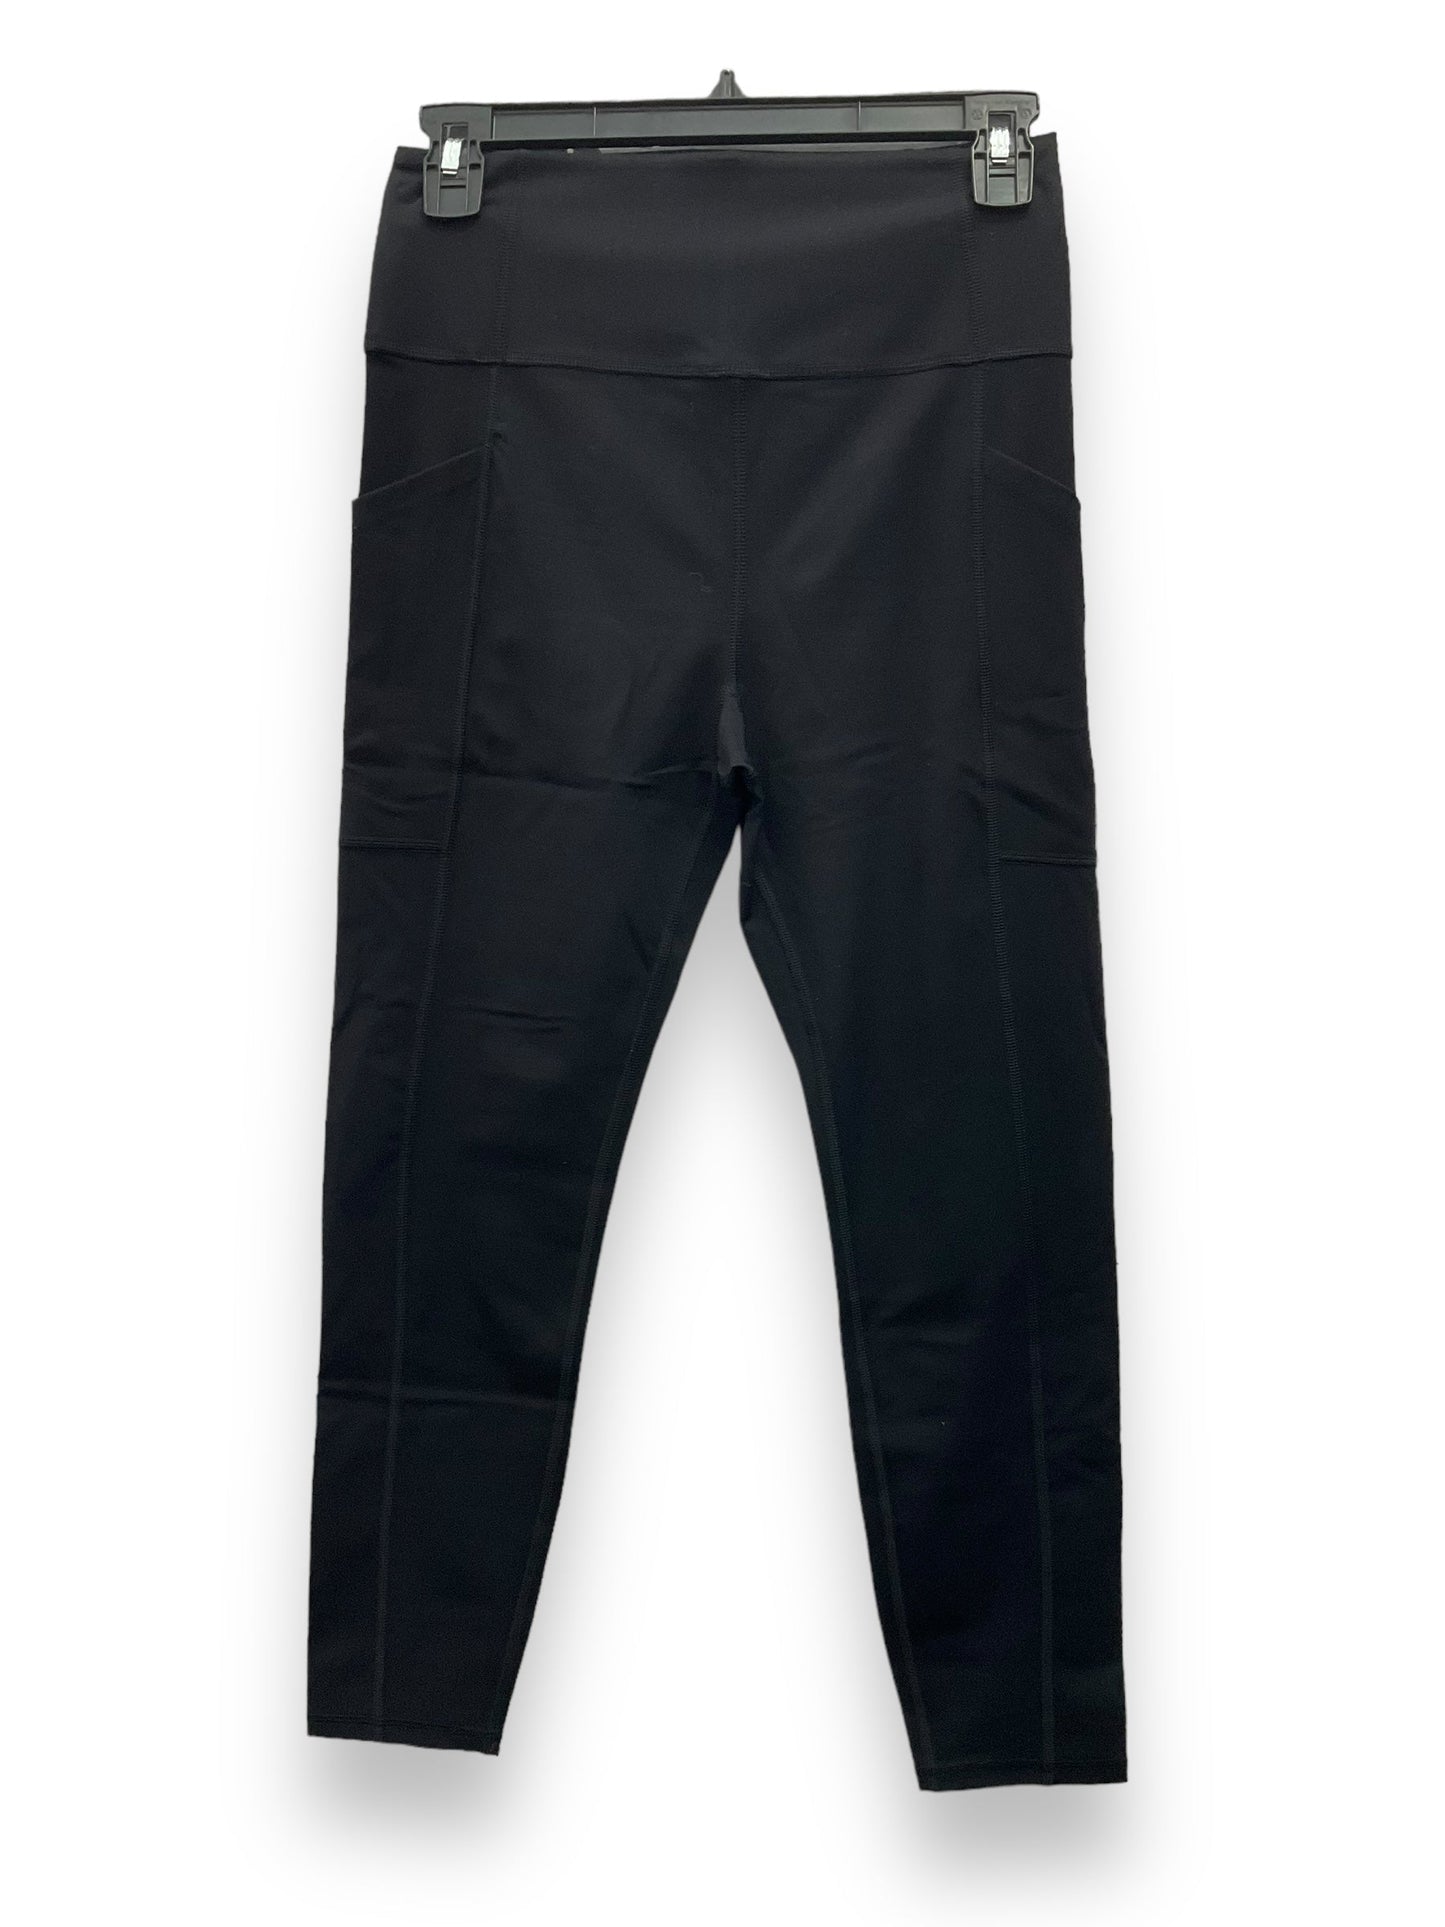 Black Pants Leggings Clothes Mentor, Size M